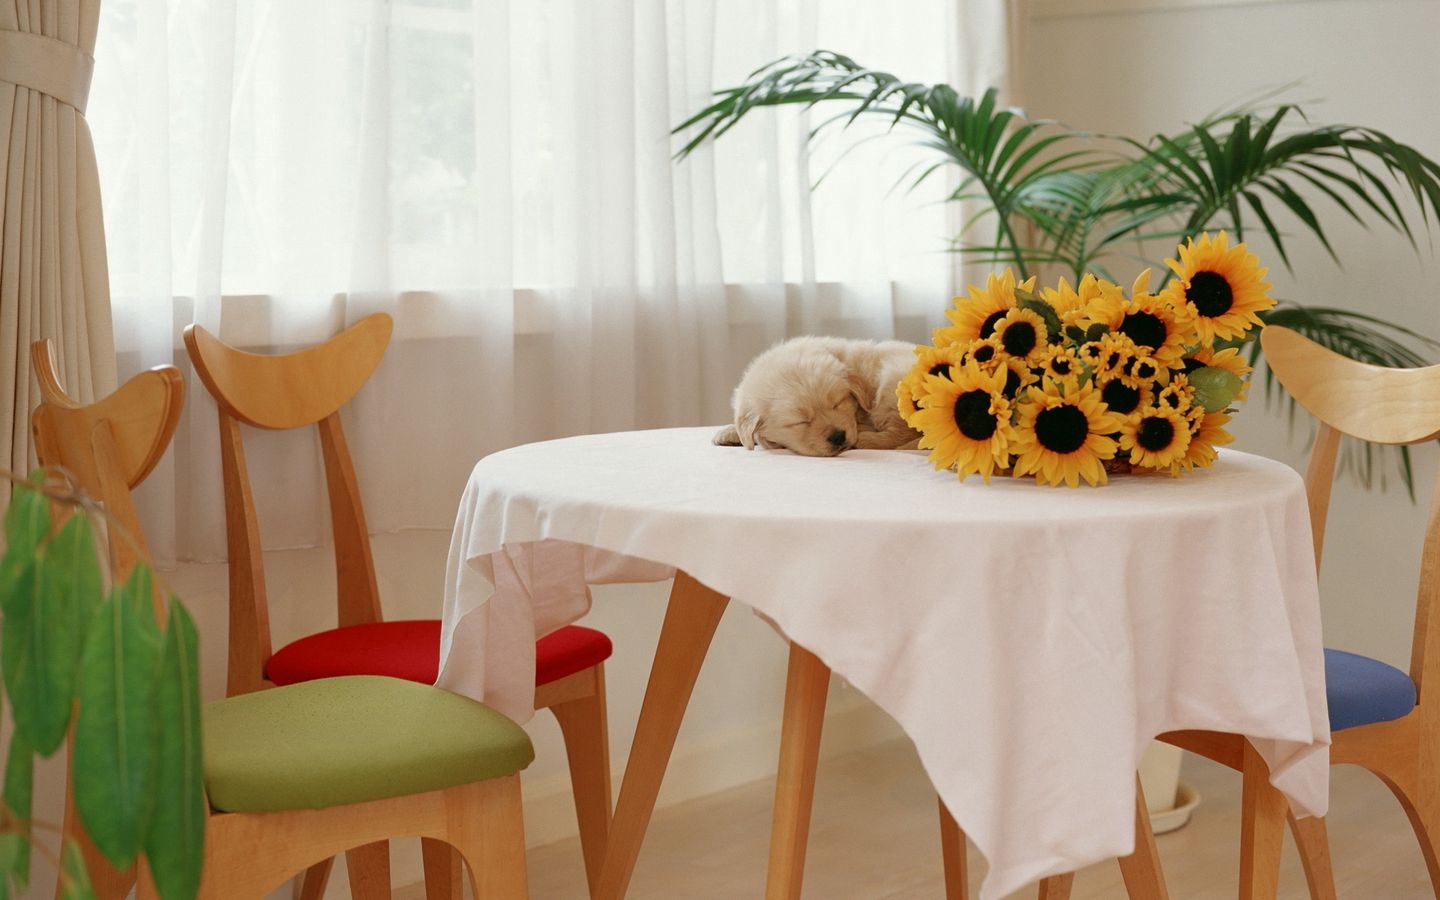 小奶狗在桌子上睡觉和向日葵的合照高清壁纸下载